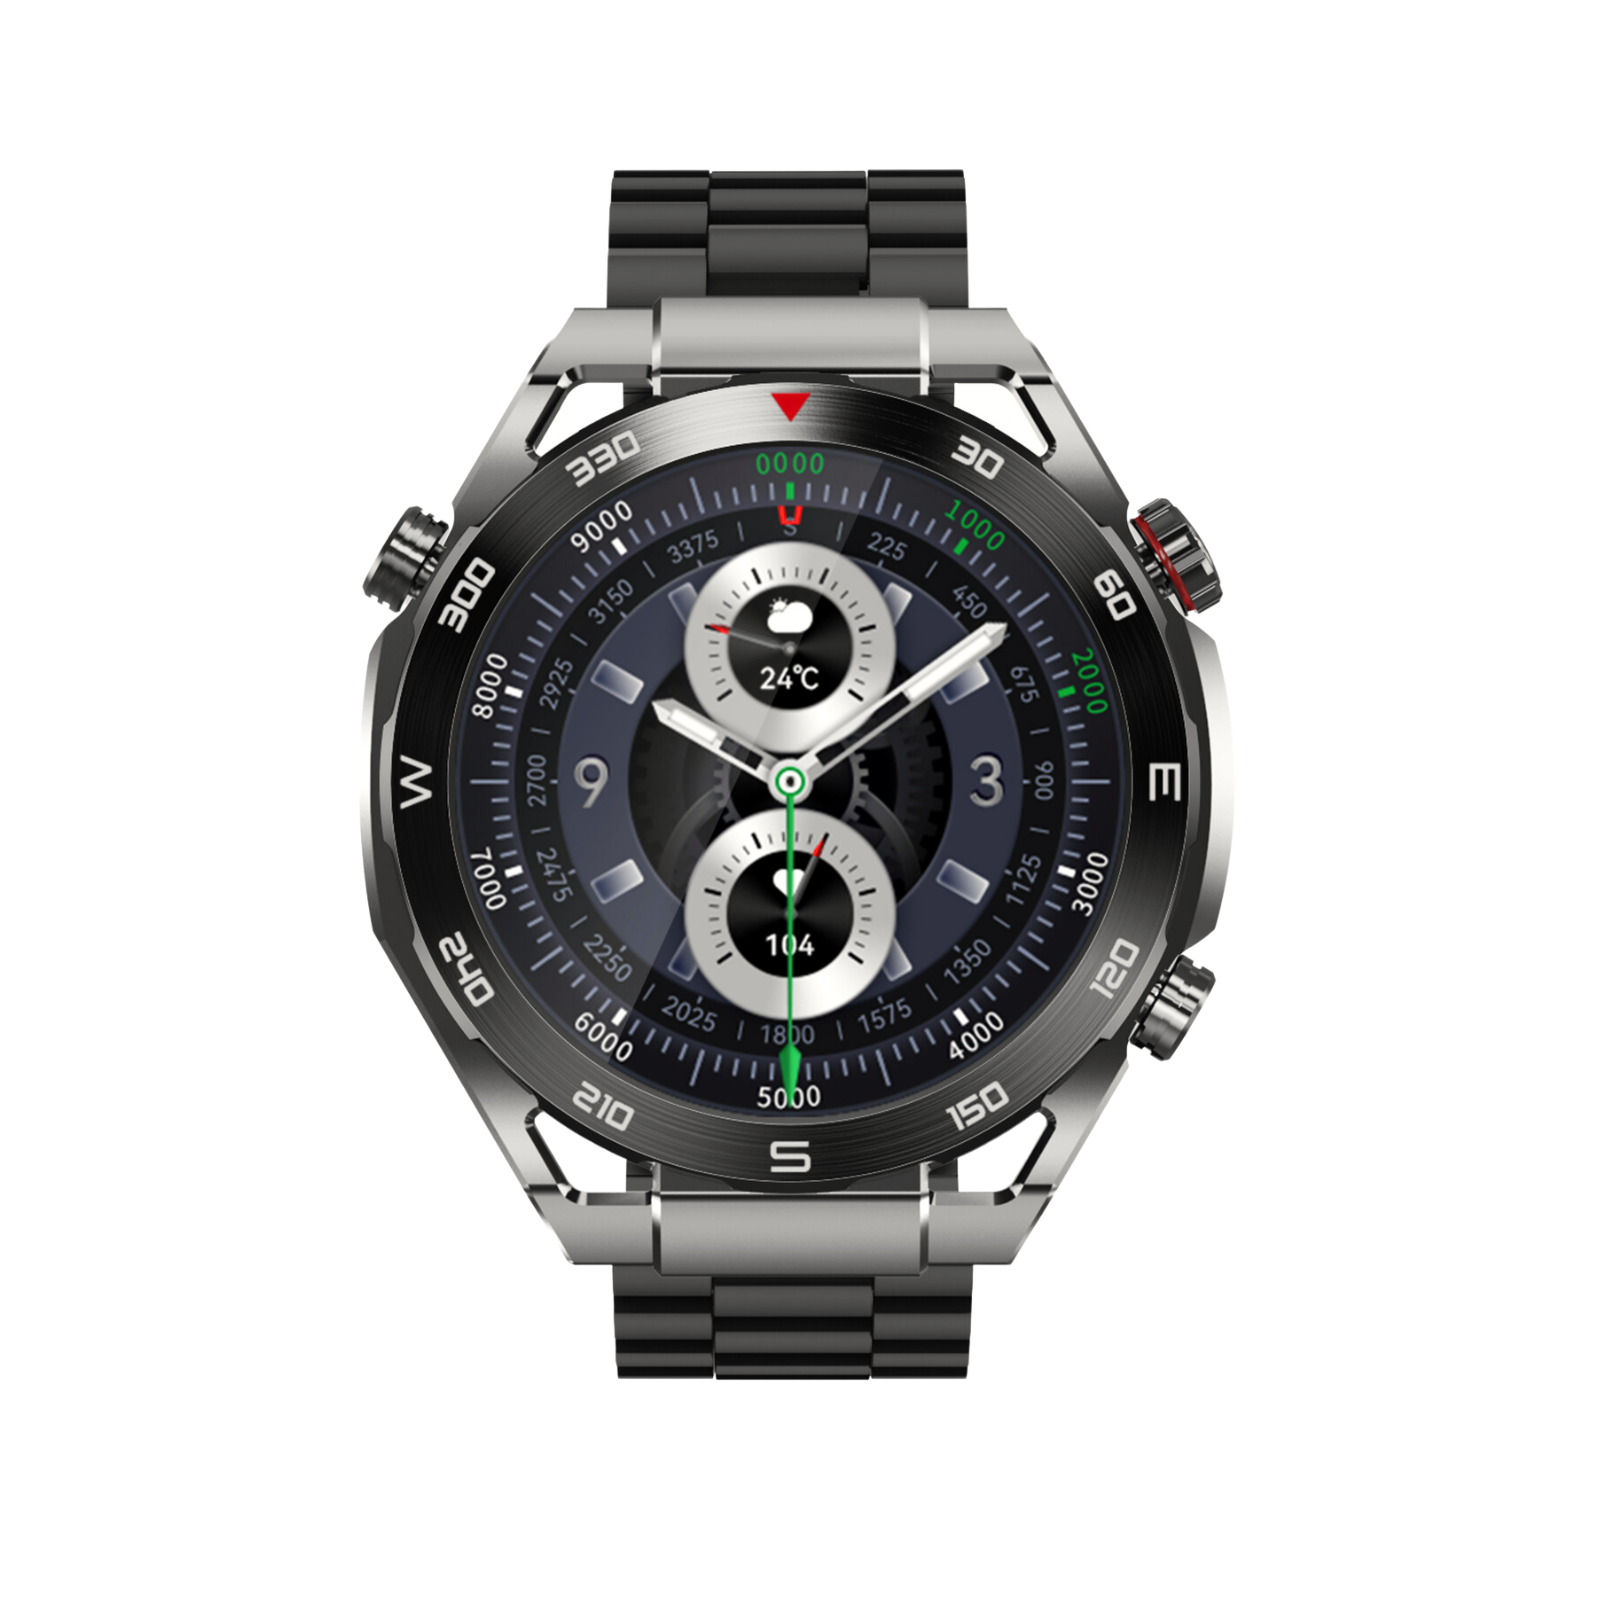 Watch G3 Ultimax Akıllı Saat